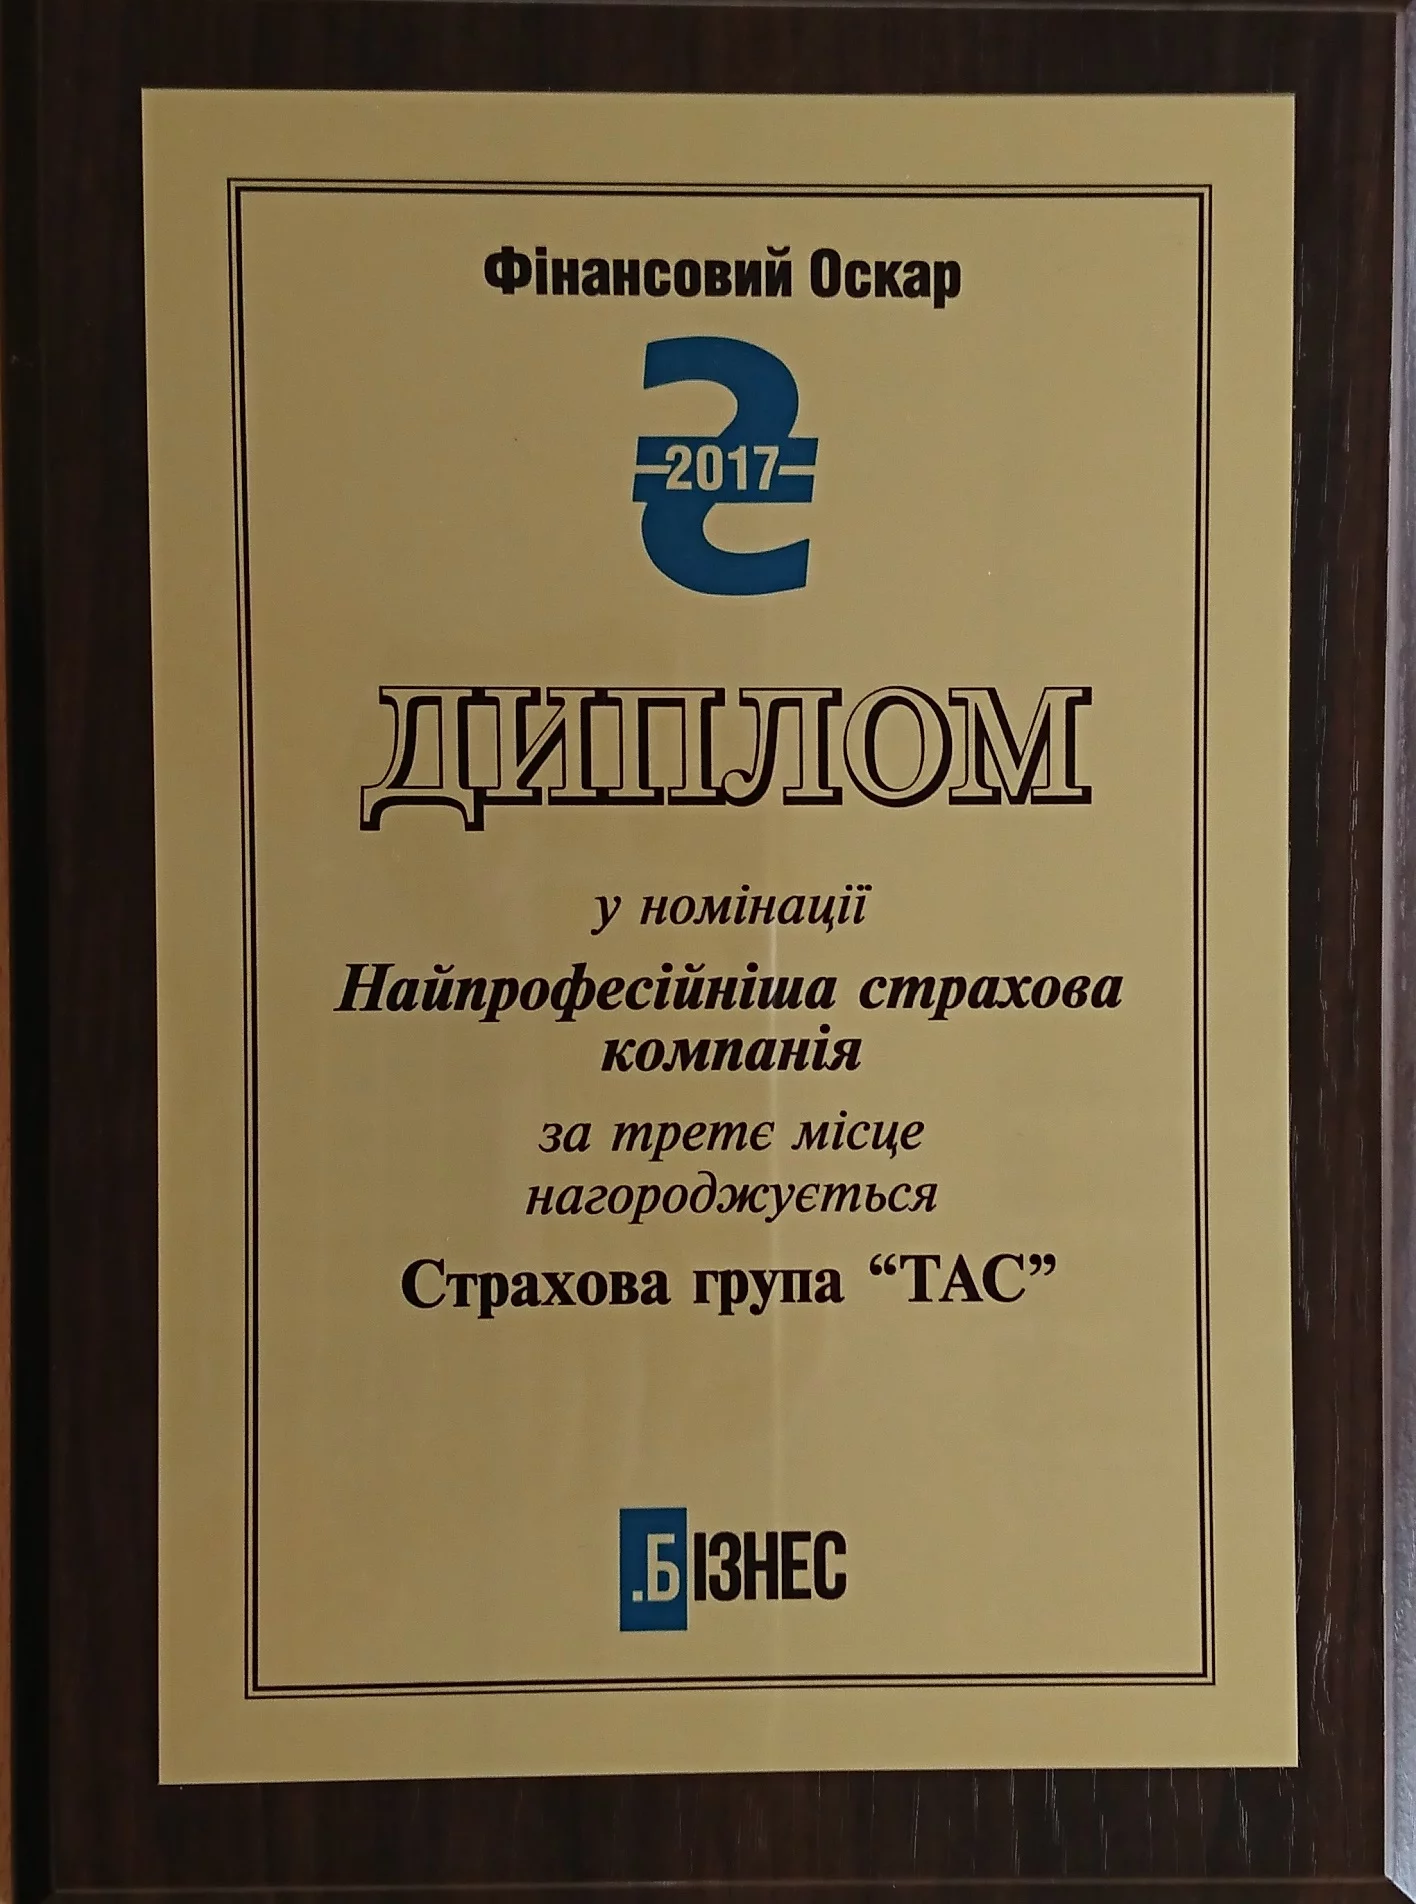 Автостраховик №2 серед страхових компаній України за 2016 рік в рейтингу журналу «Бізнес»